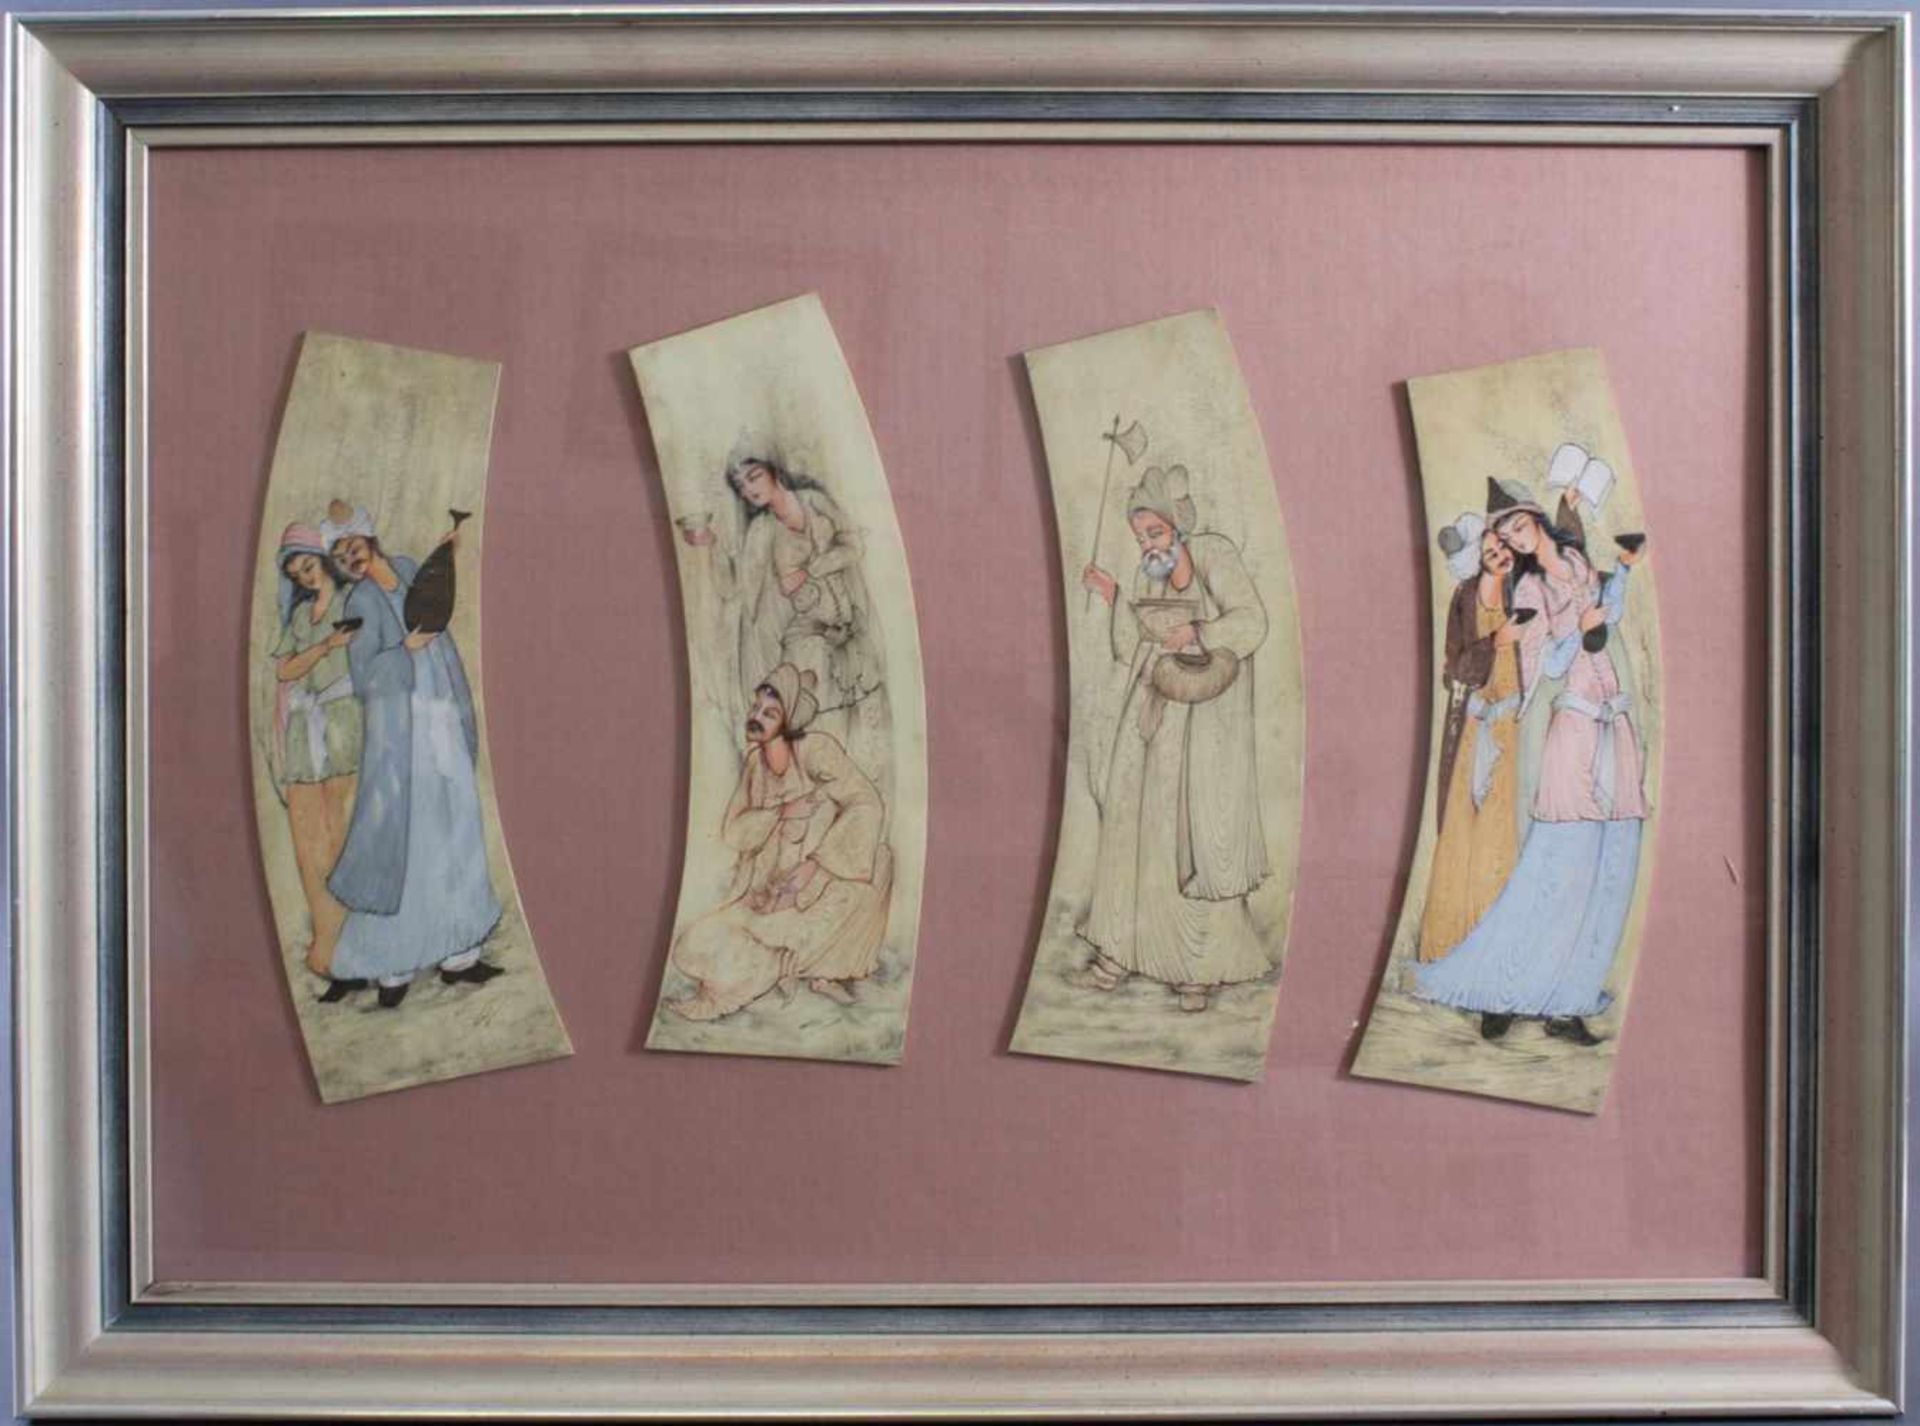 Persische Miniaturmalerei auf Elfenbein 19. Jh.Farbige Malerei, 4 unterschiedliche figürliche